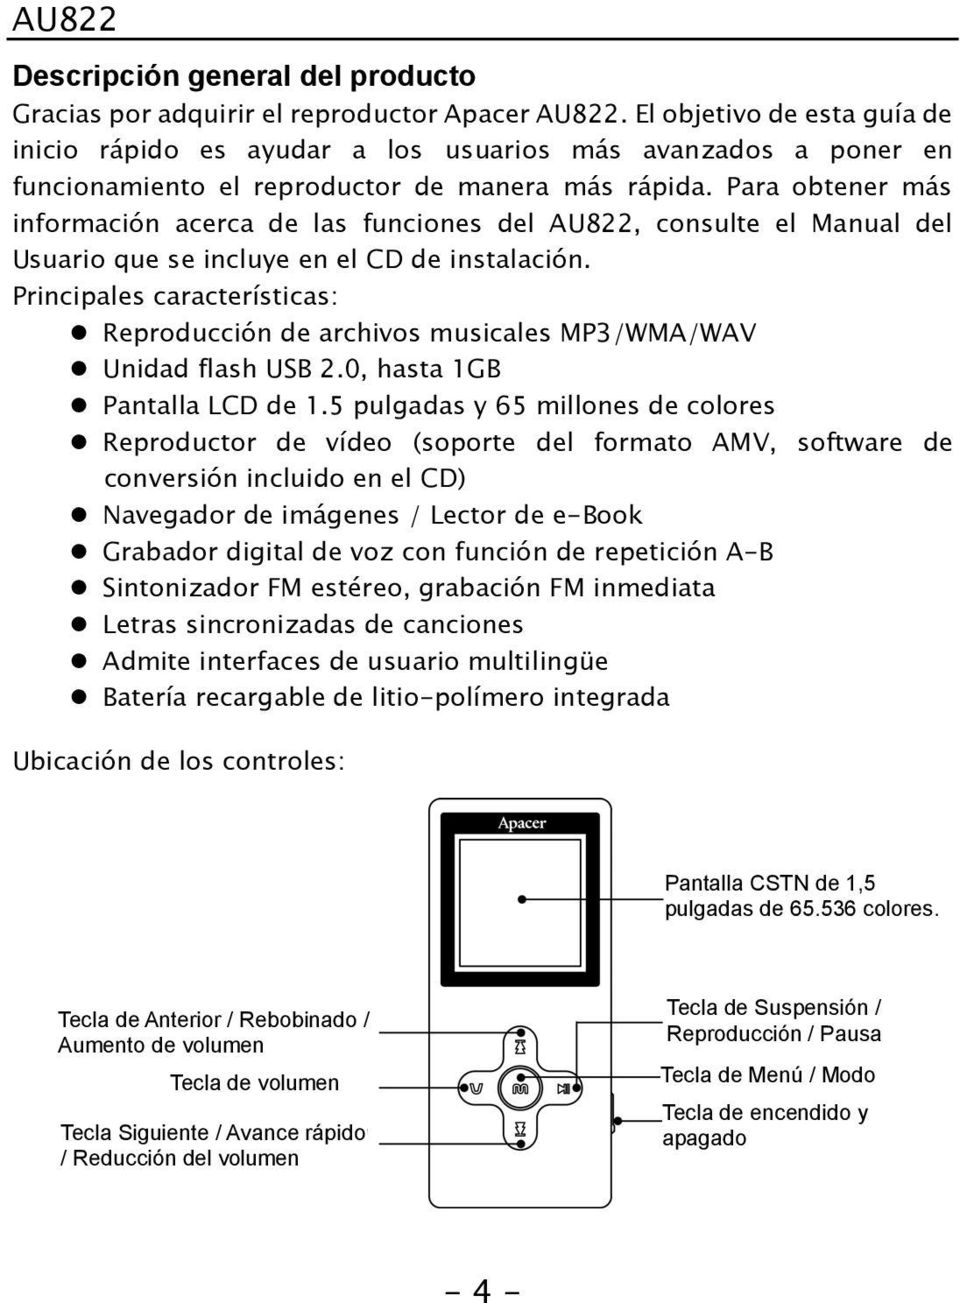 Para obtener más información acerca de las funciones del AU822, consulte el Manual del Usuario que se incluye en el CD de instalación.